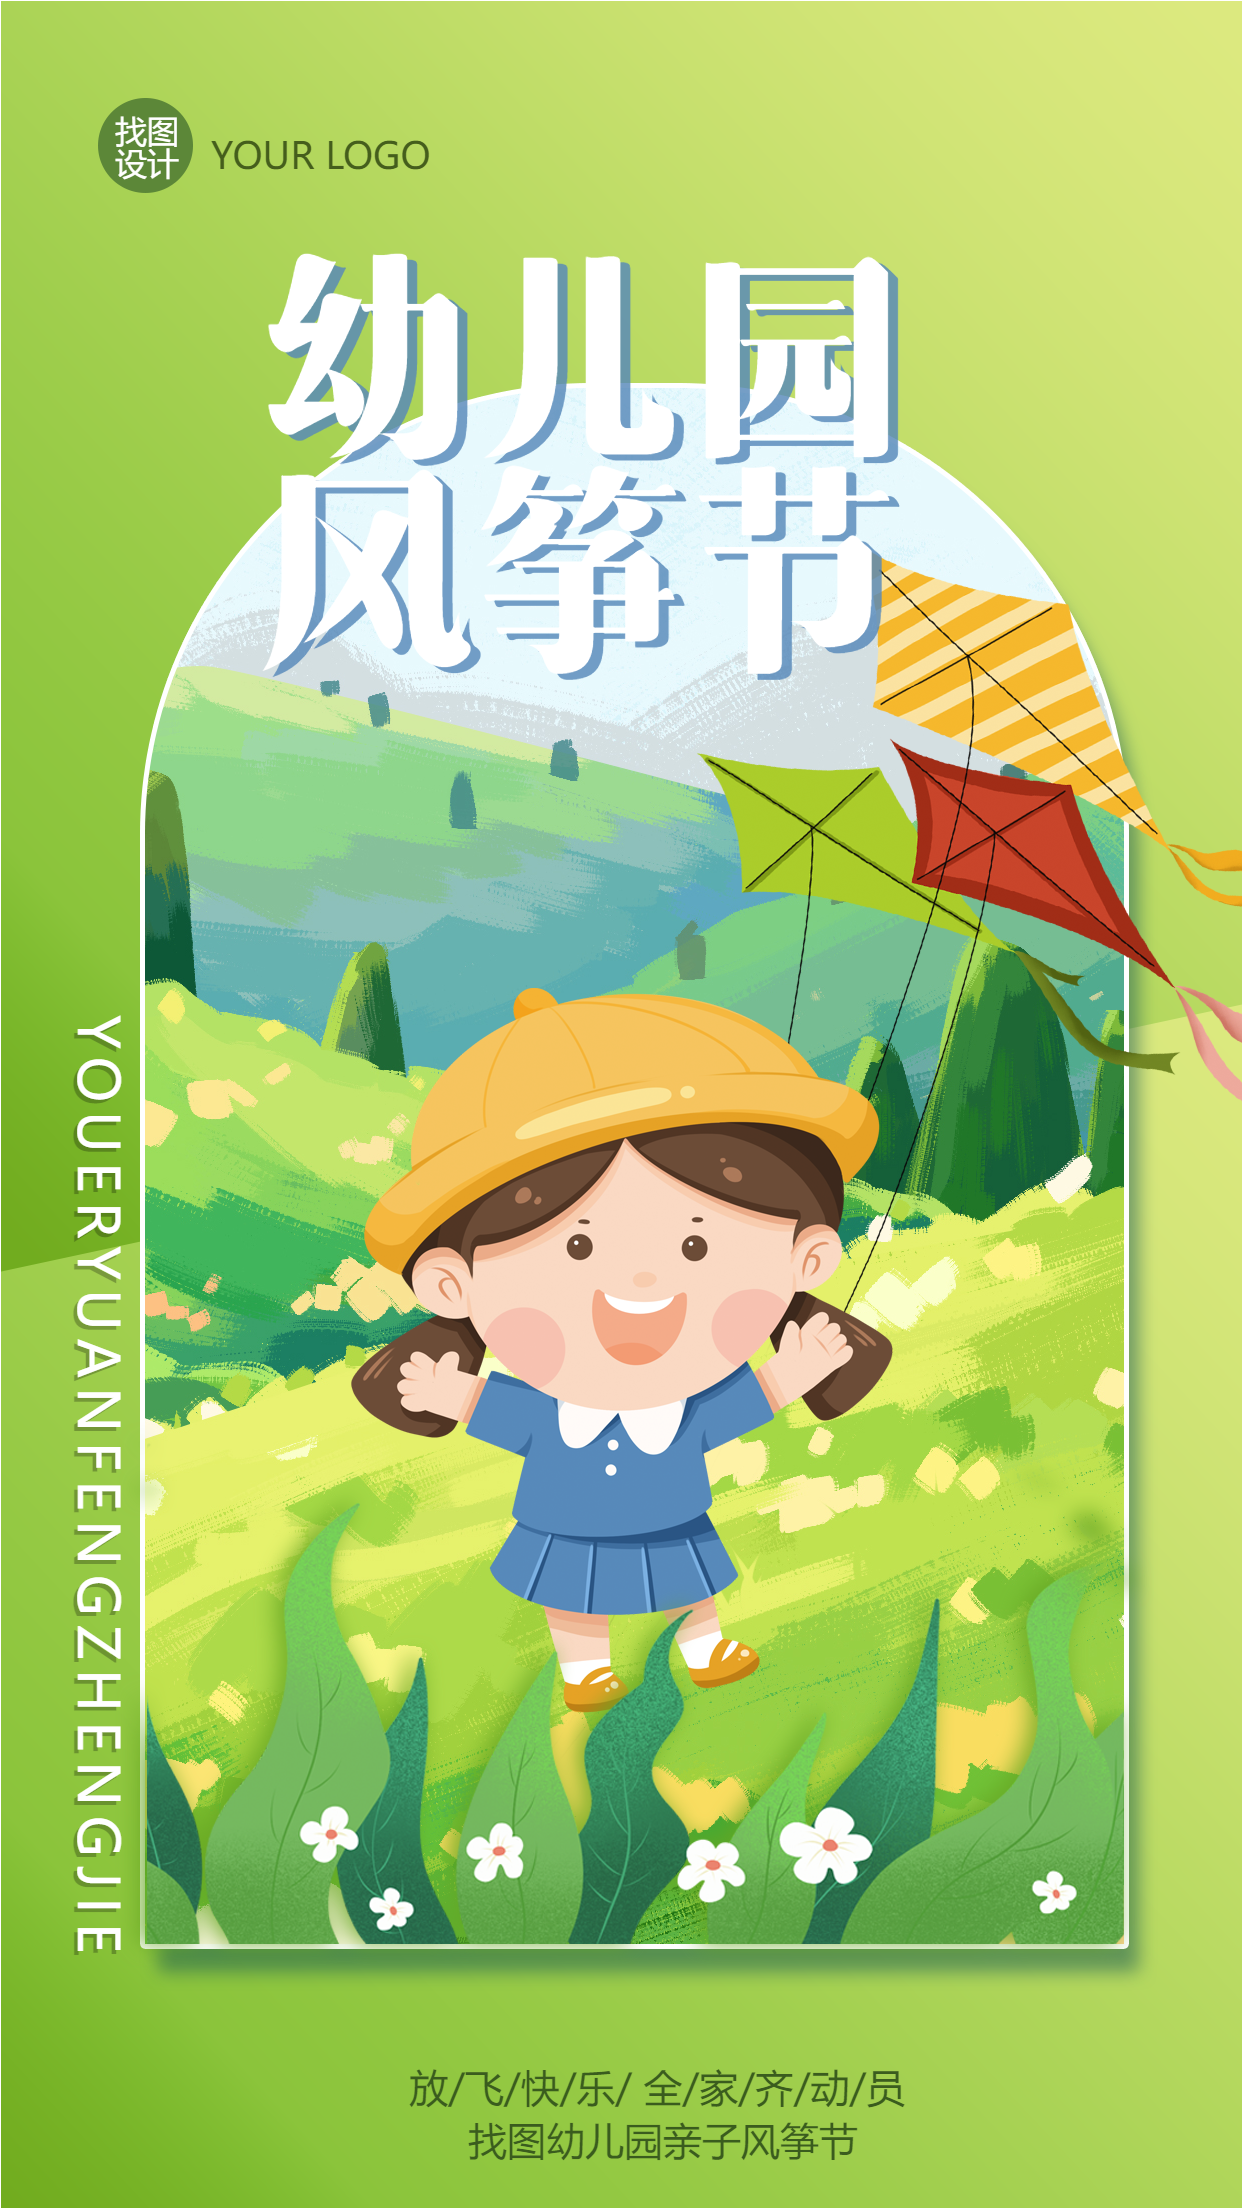 春季全家齐动员幼儿园风筝节手机海报